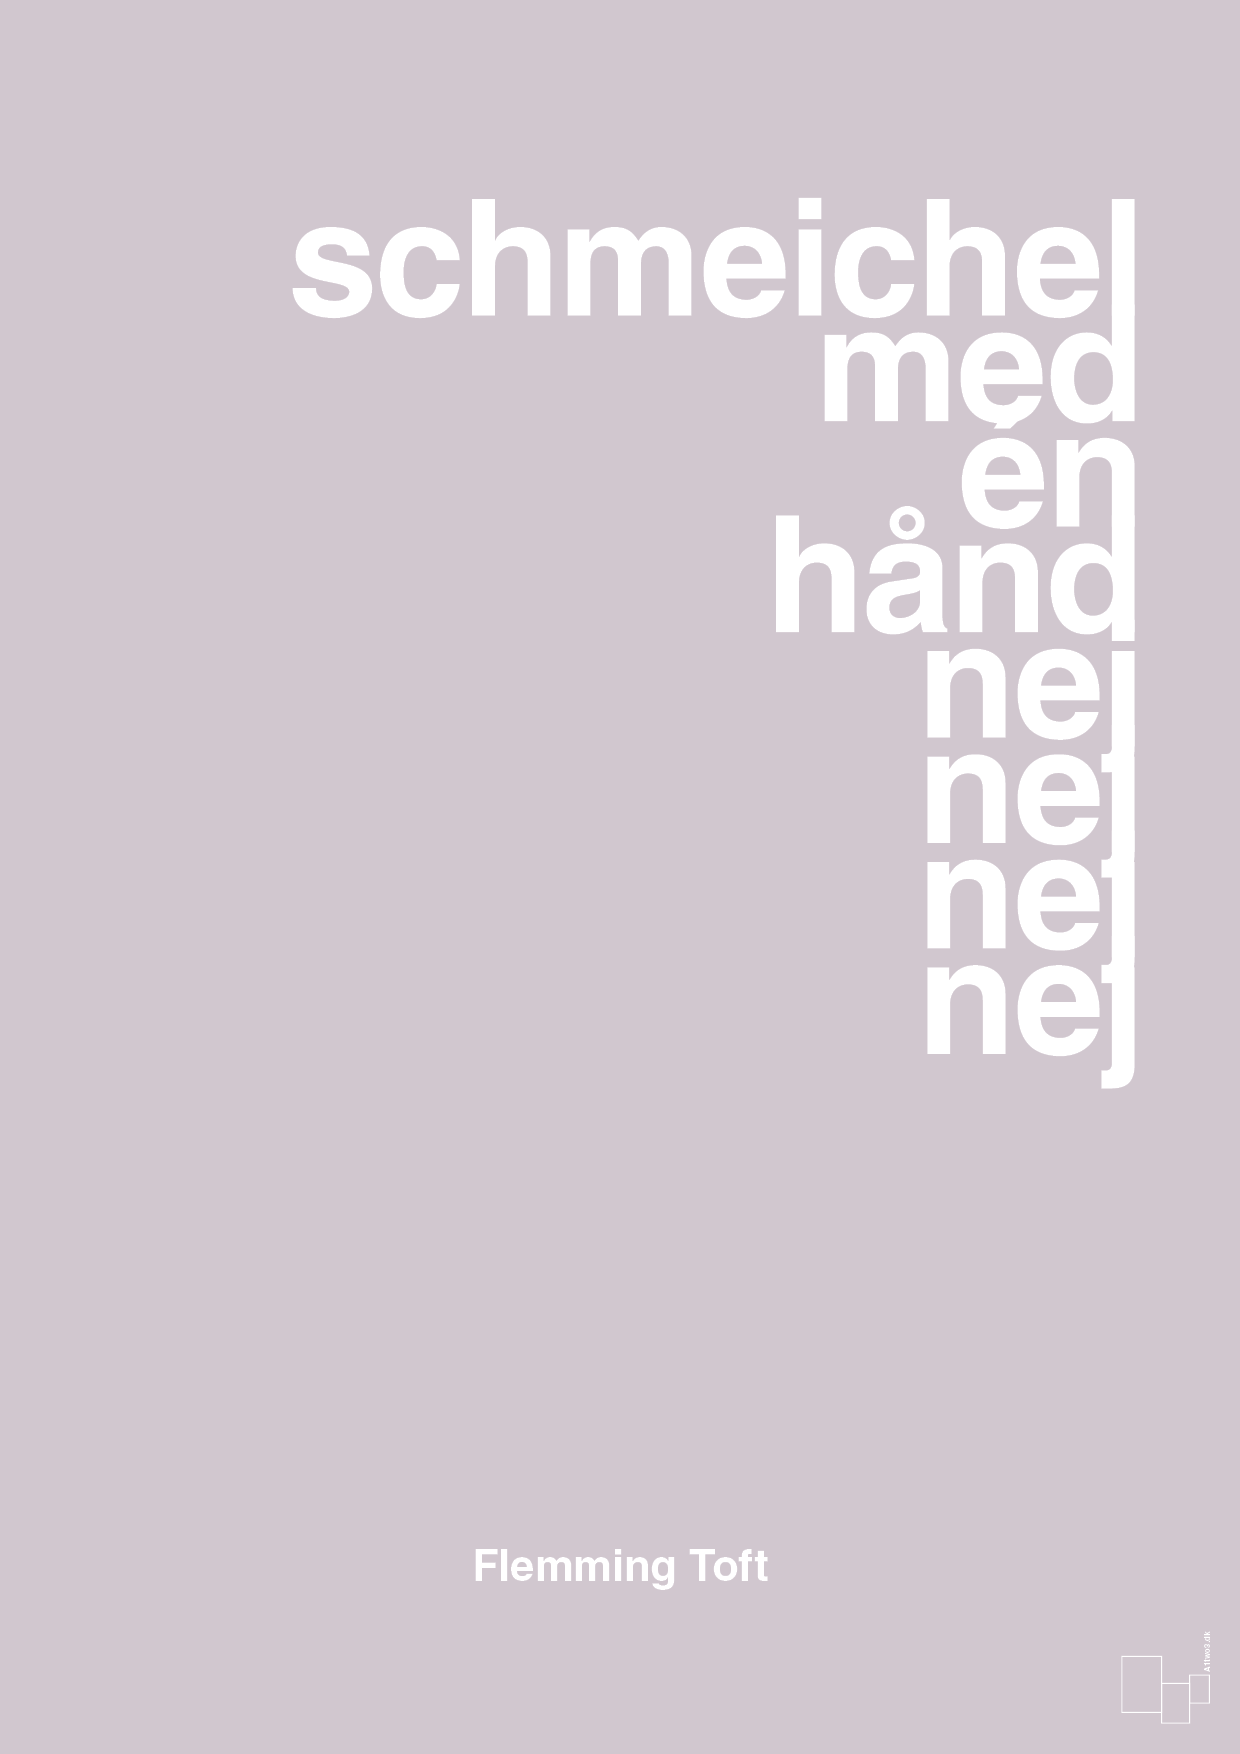 schmeichel med én hånd nej nej nej nej - Plakat med Citater i Dusty Lilac